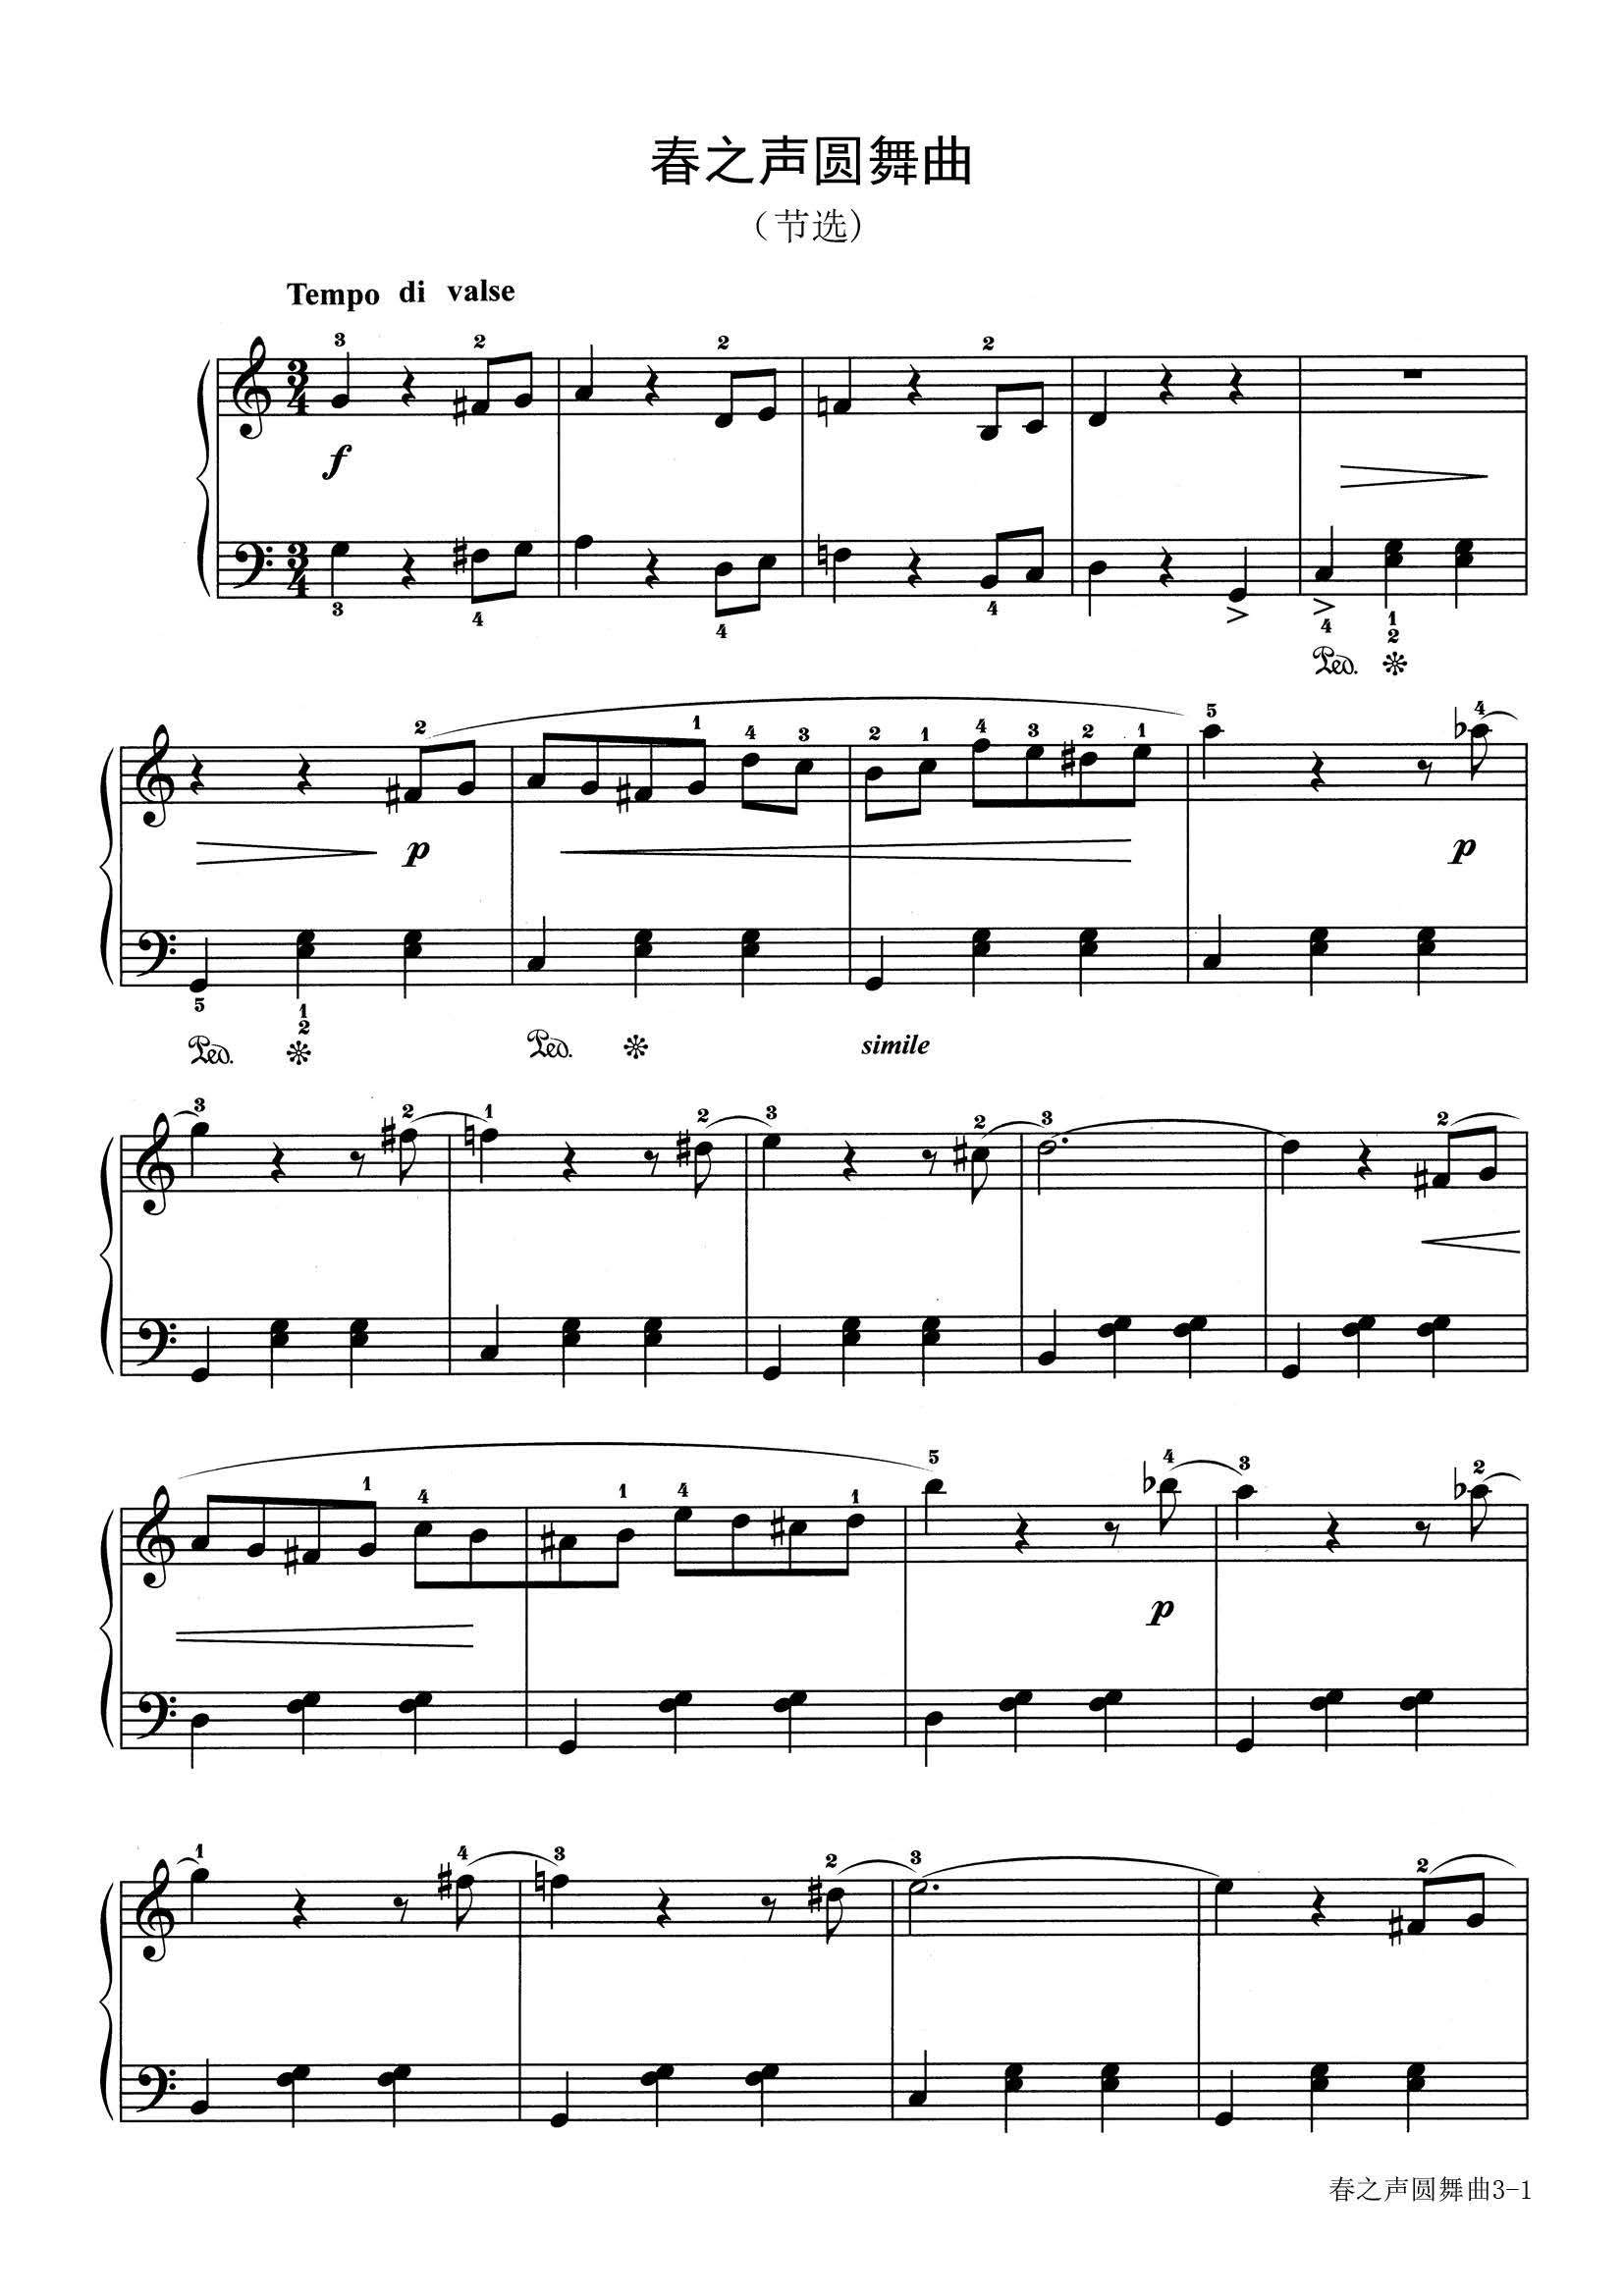 春之声圆舞曲-小约翰·施特劳斯-c调-流行钢琴五线谱